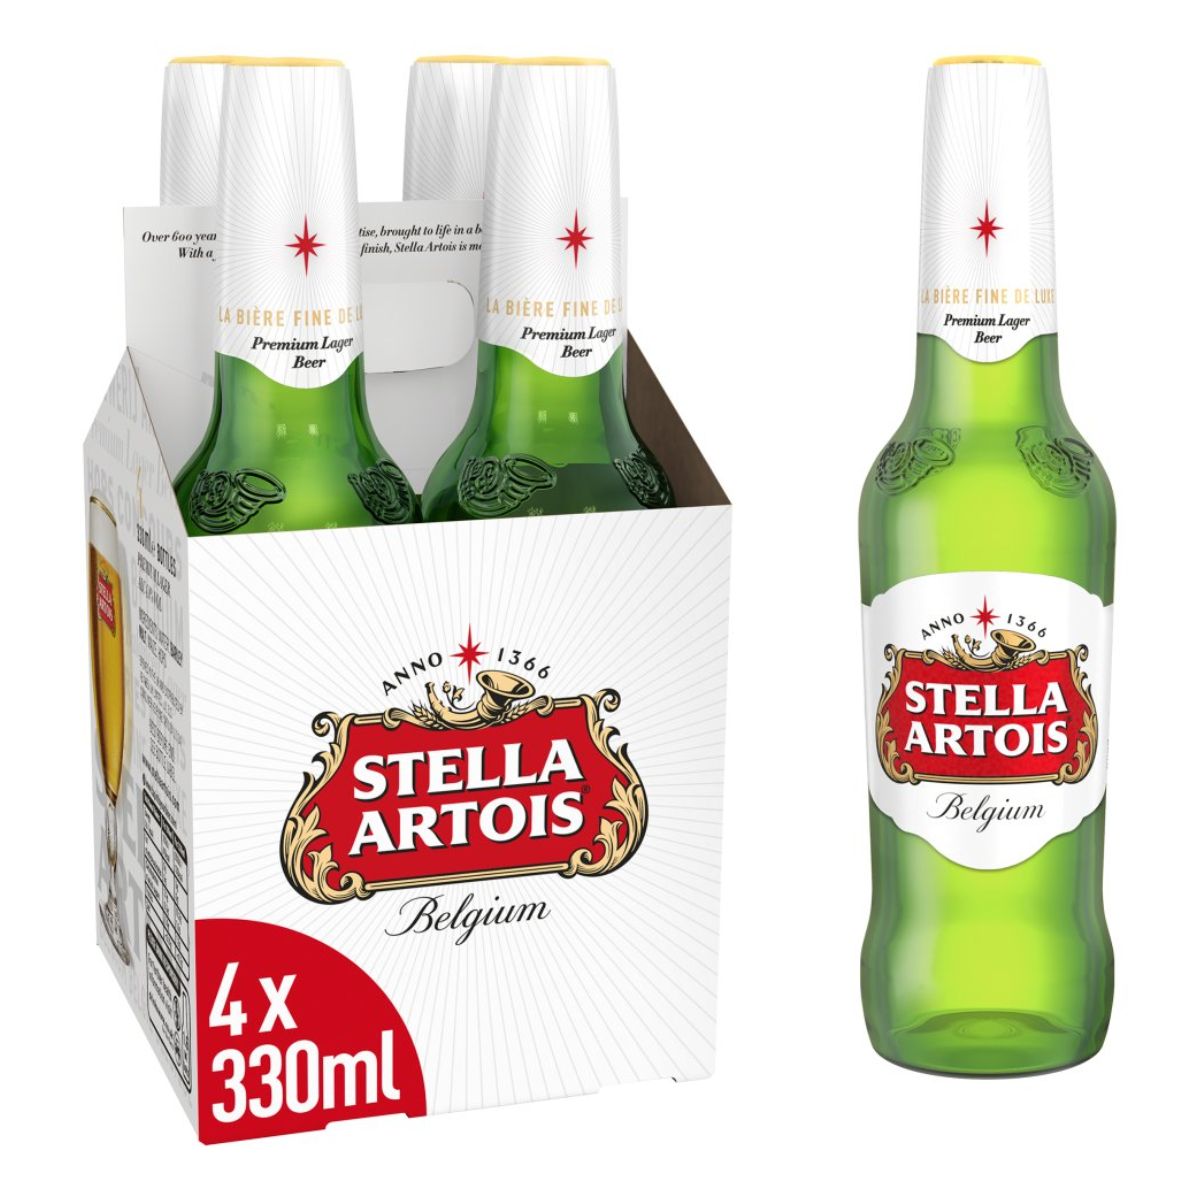 Four bottles of Stella Artois - Belgium Premium Lager Bottles (4.6% ABV) - 4 x 330ml beer in a box.